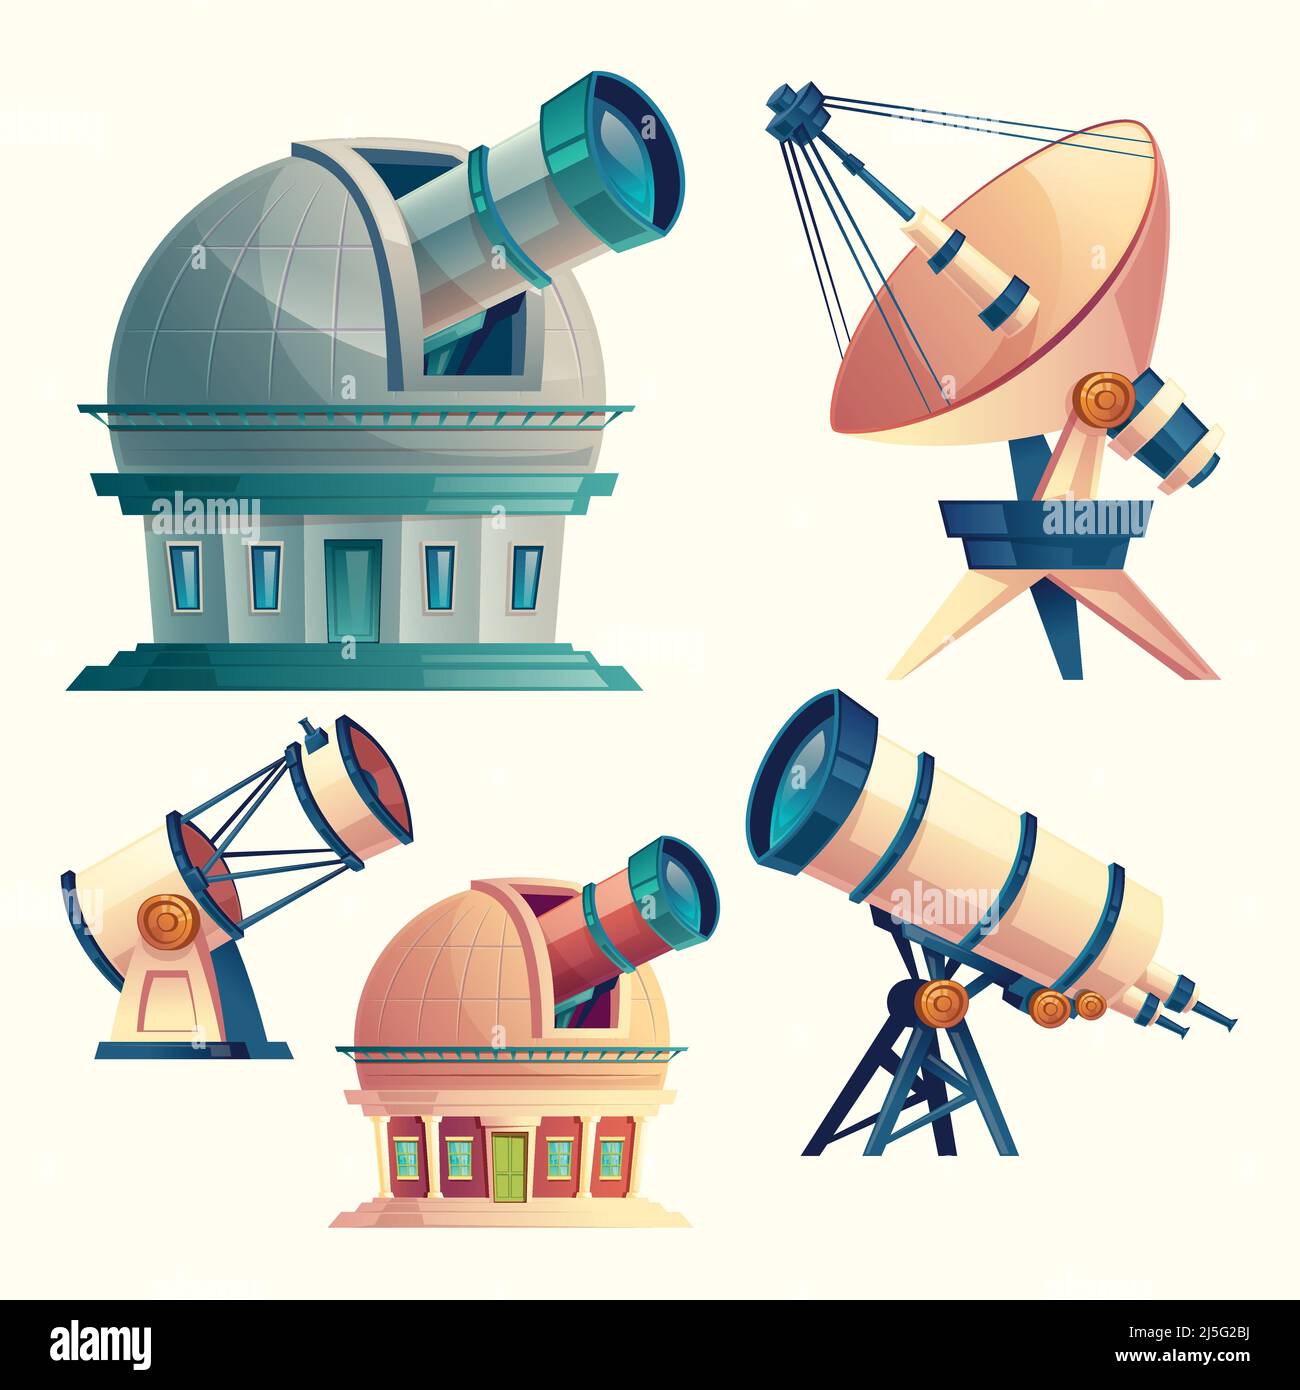 Ensemble de dessins animés vectoriels avec télescopes astronomiques, observatoires, planétarium, parabole satellite. Équipements scientifiques et dispositifs optiques avec lentilles pour Illustration de Vecteur